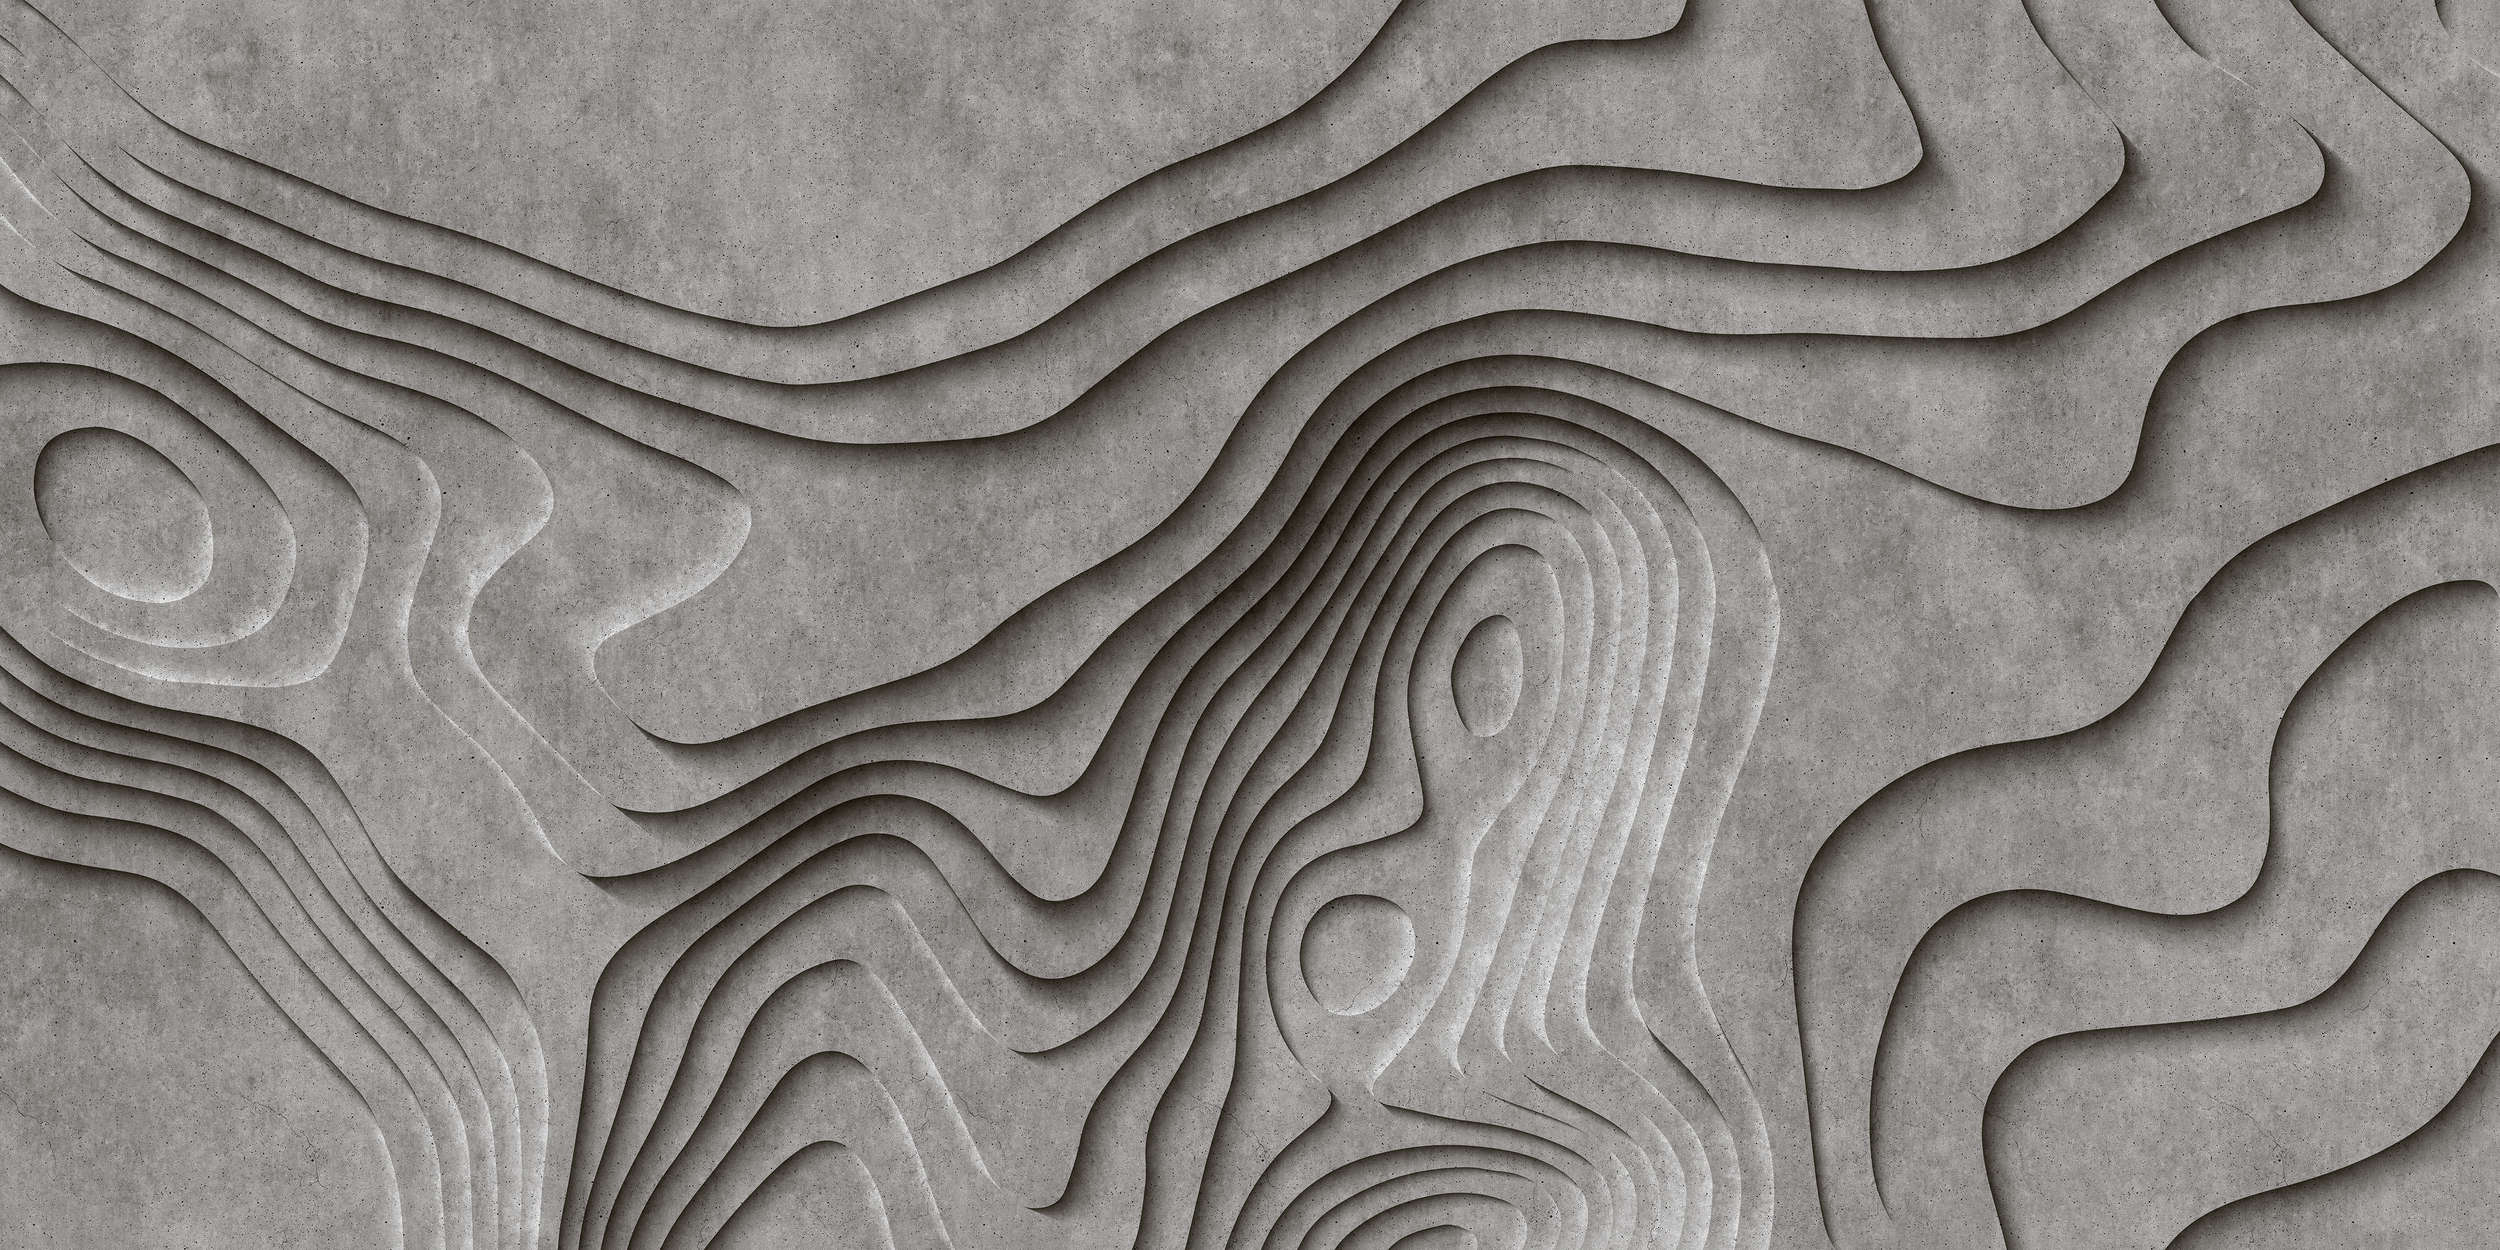             Canyon 1 - Cool 3D concrete canyon wallpaper - Grey, Black | Matt smooth fleece
        